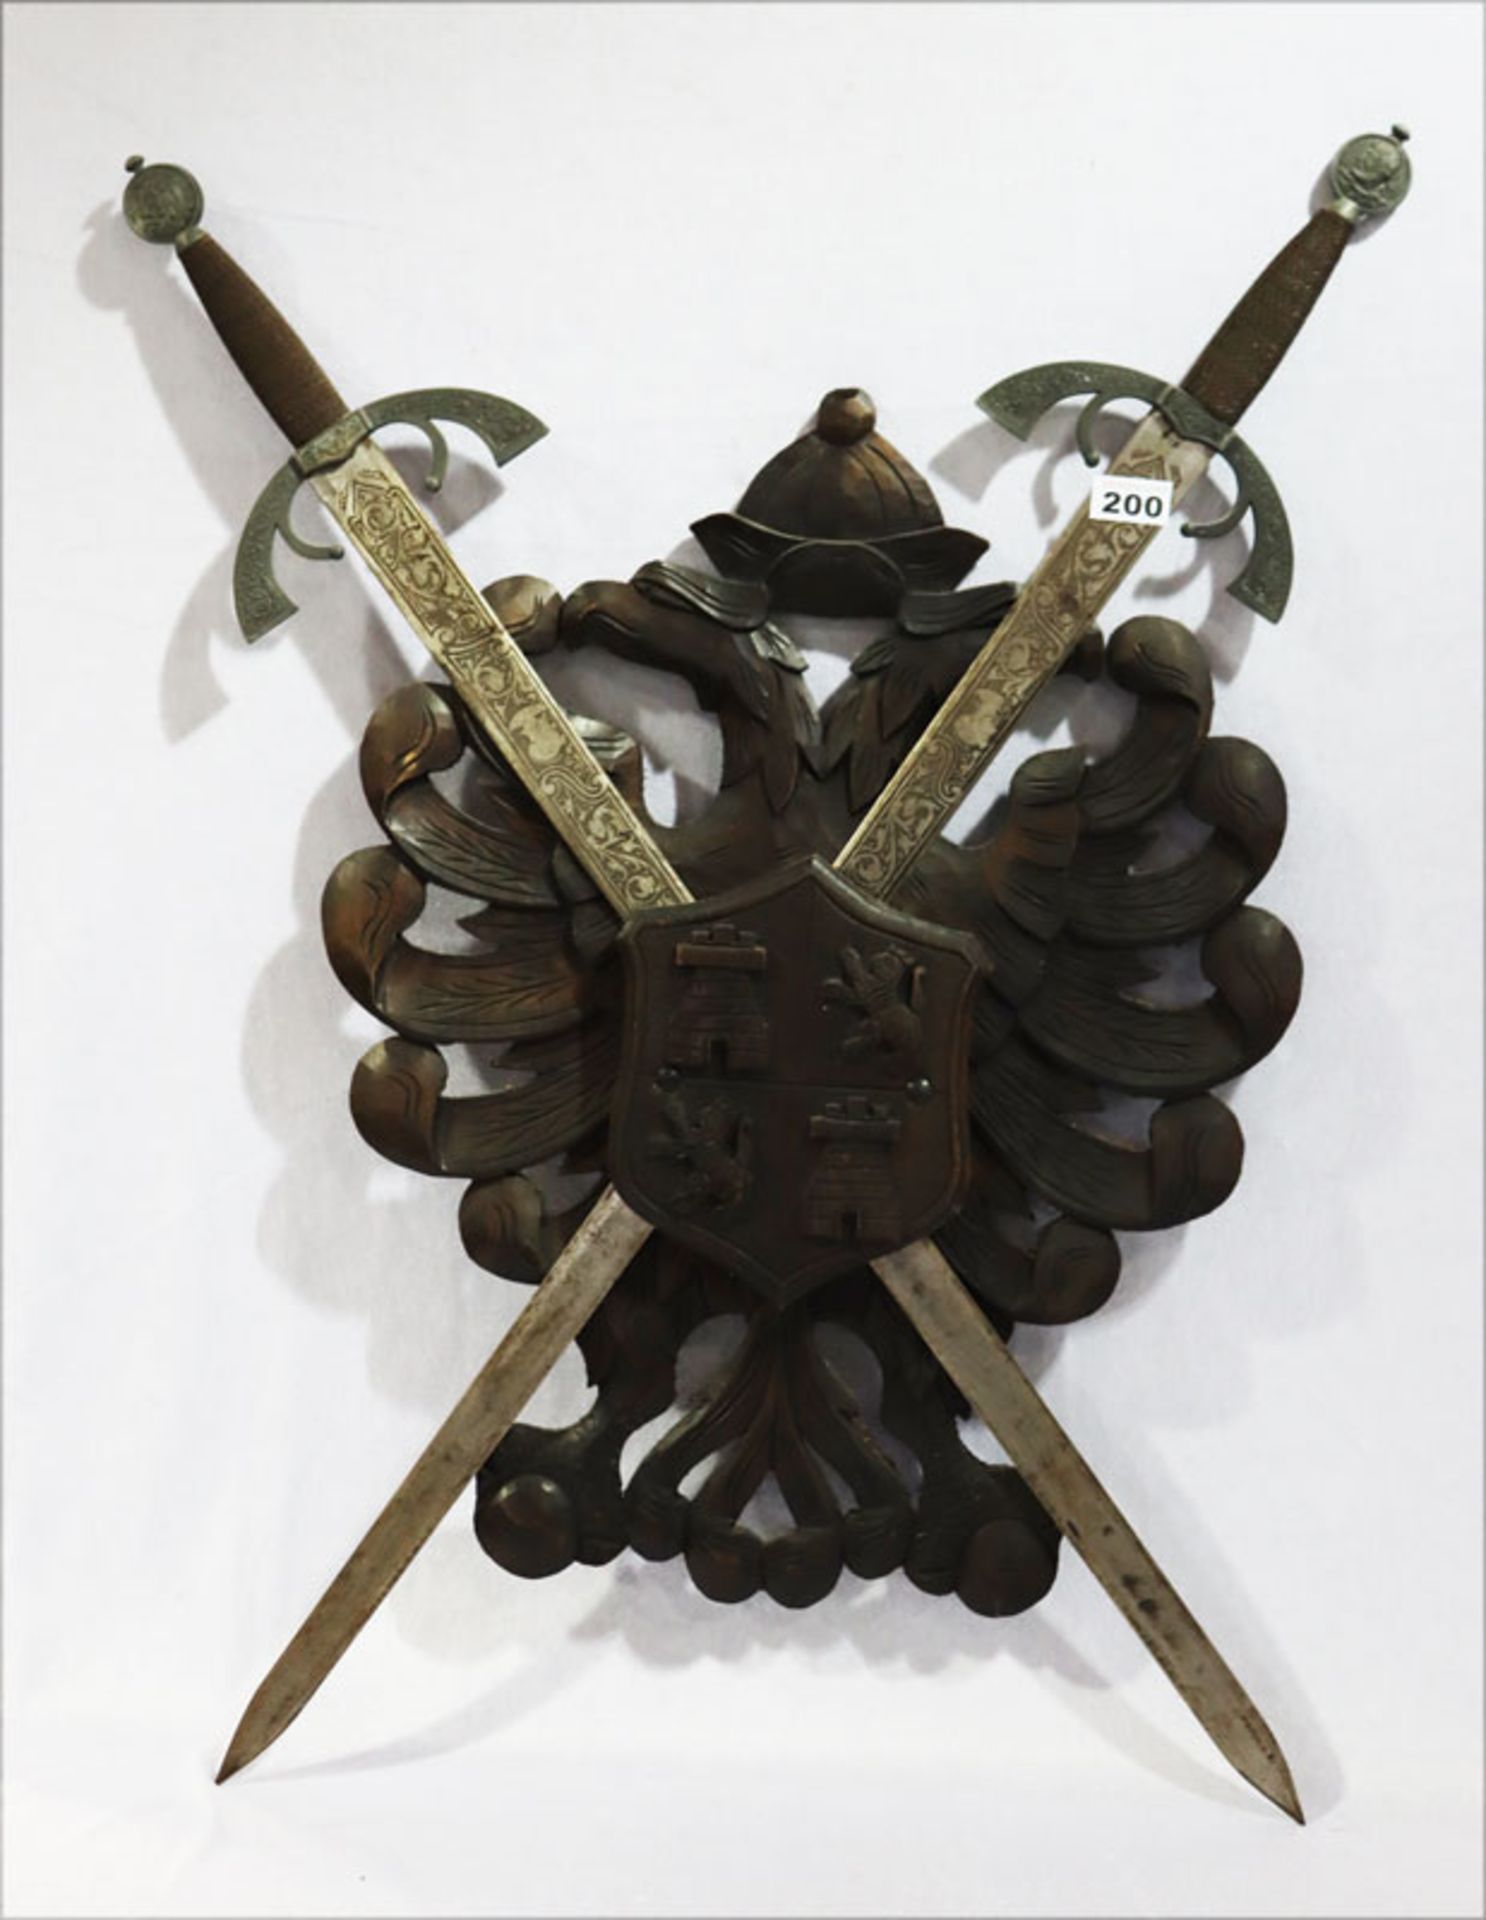 Spanisches Holz/Metall Wappenschild mit Reliefdekor, H 87 cm, B 58 cm, Altersspuren, teils